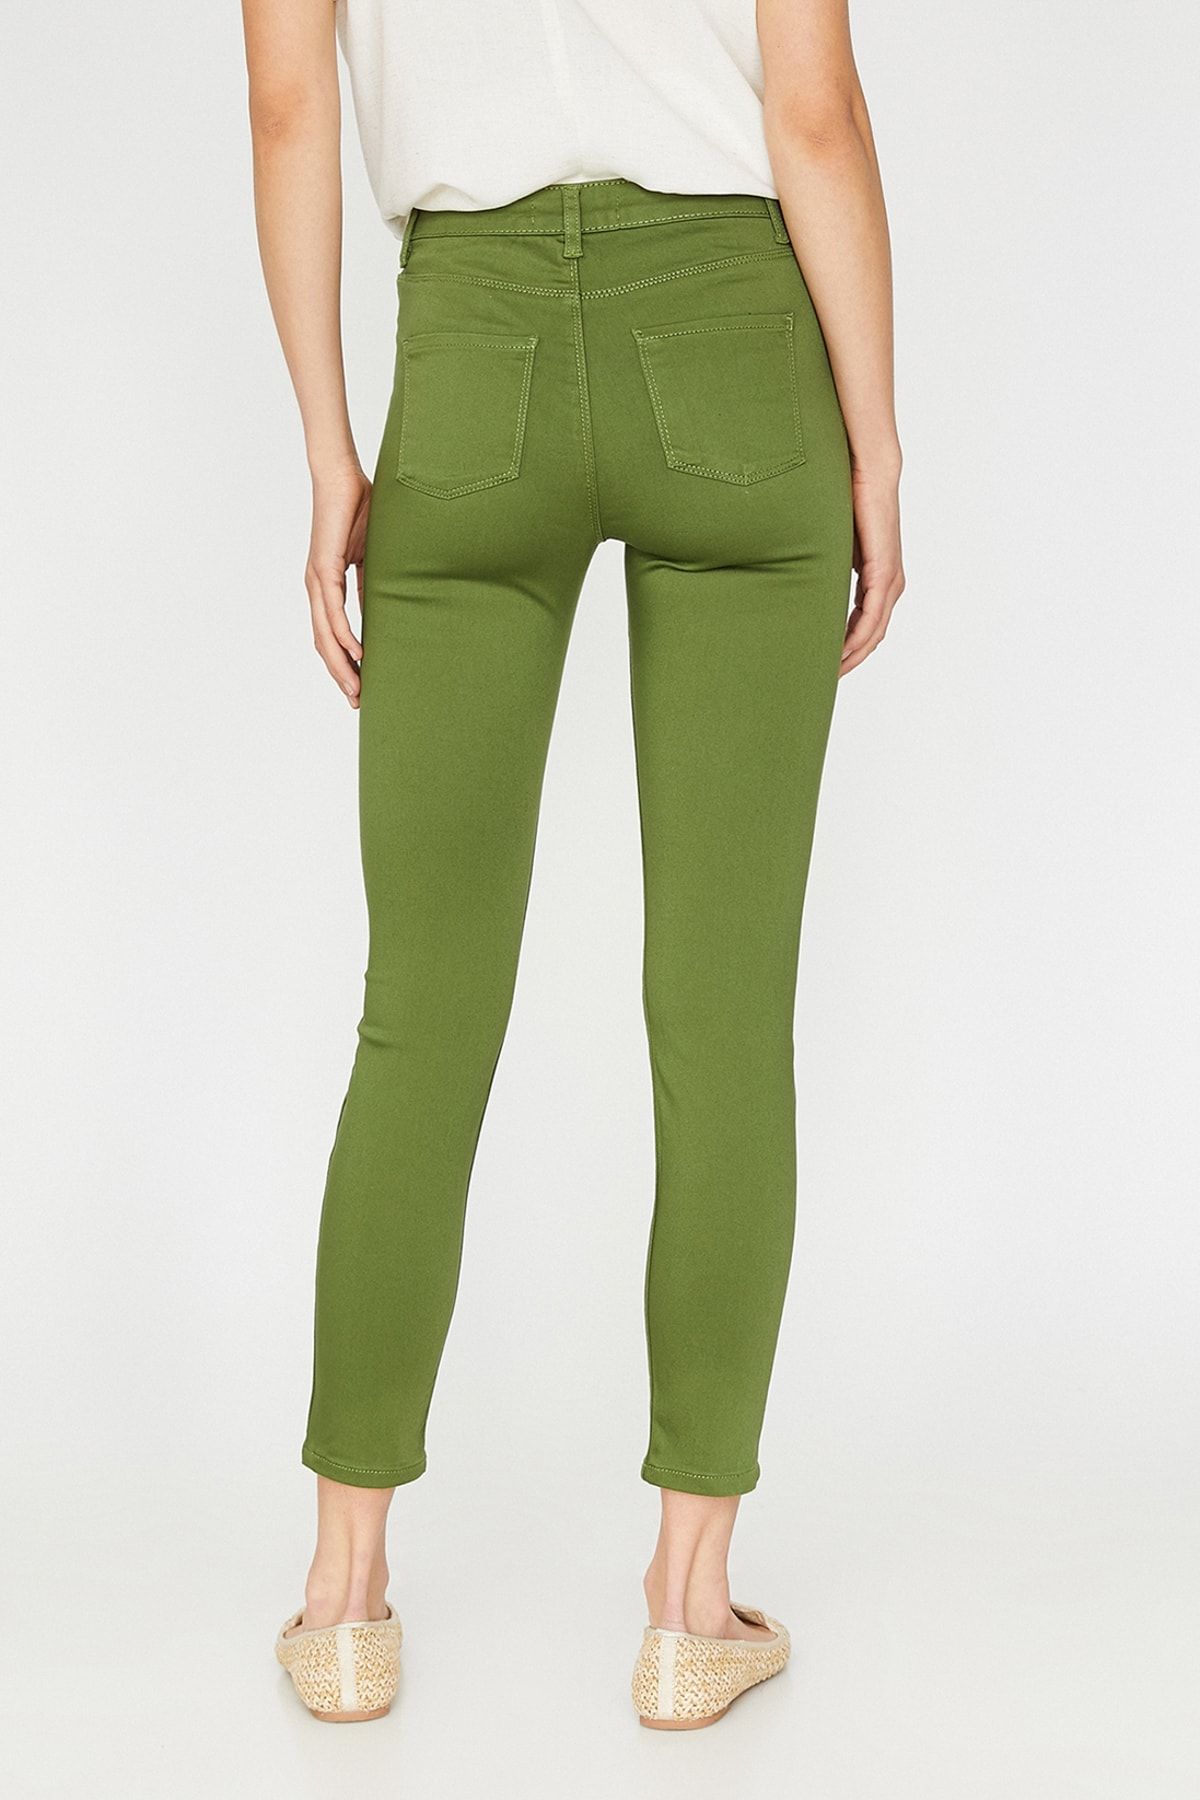 Koton Kadın Yeşil Normal Bel Dar Kesim Pantolon